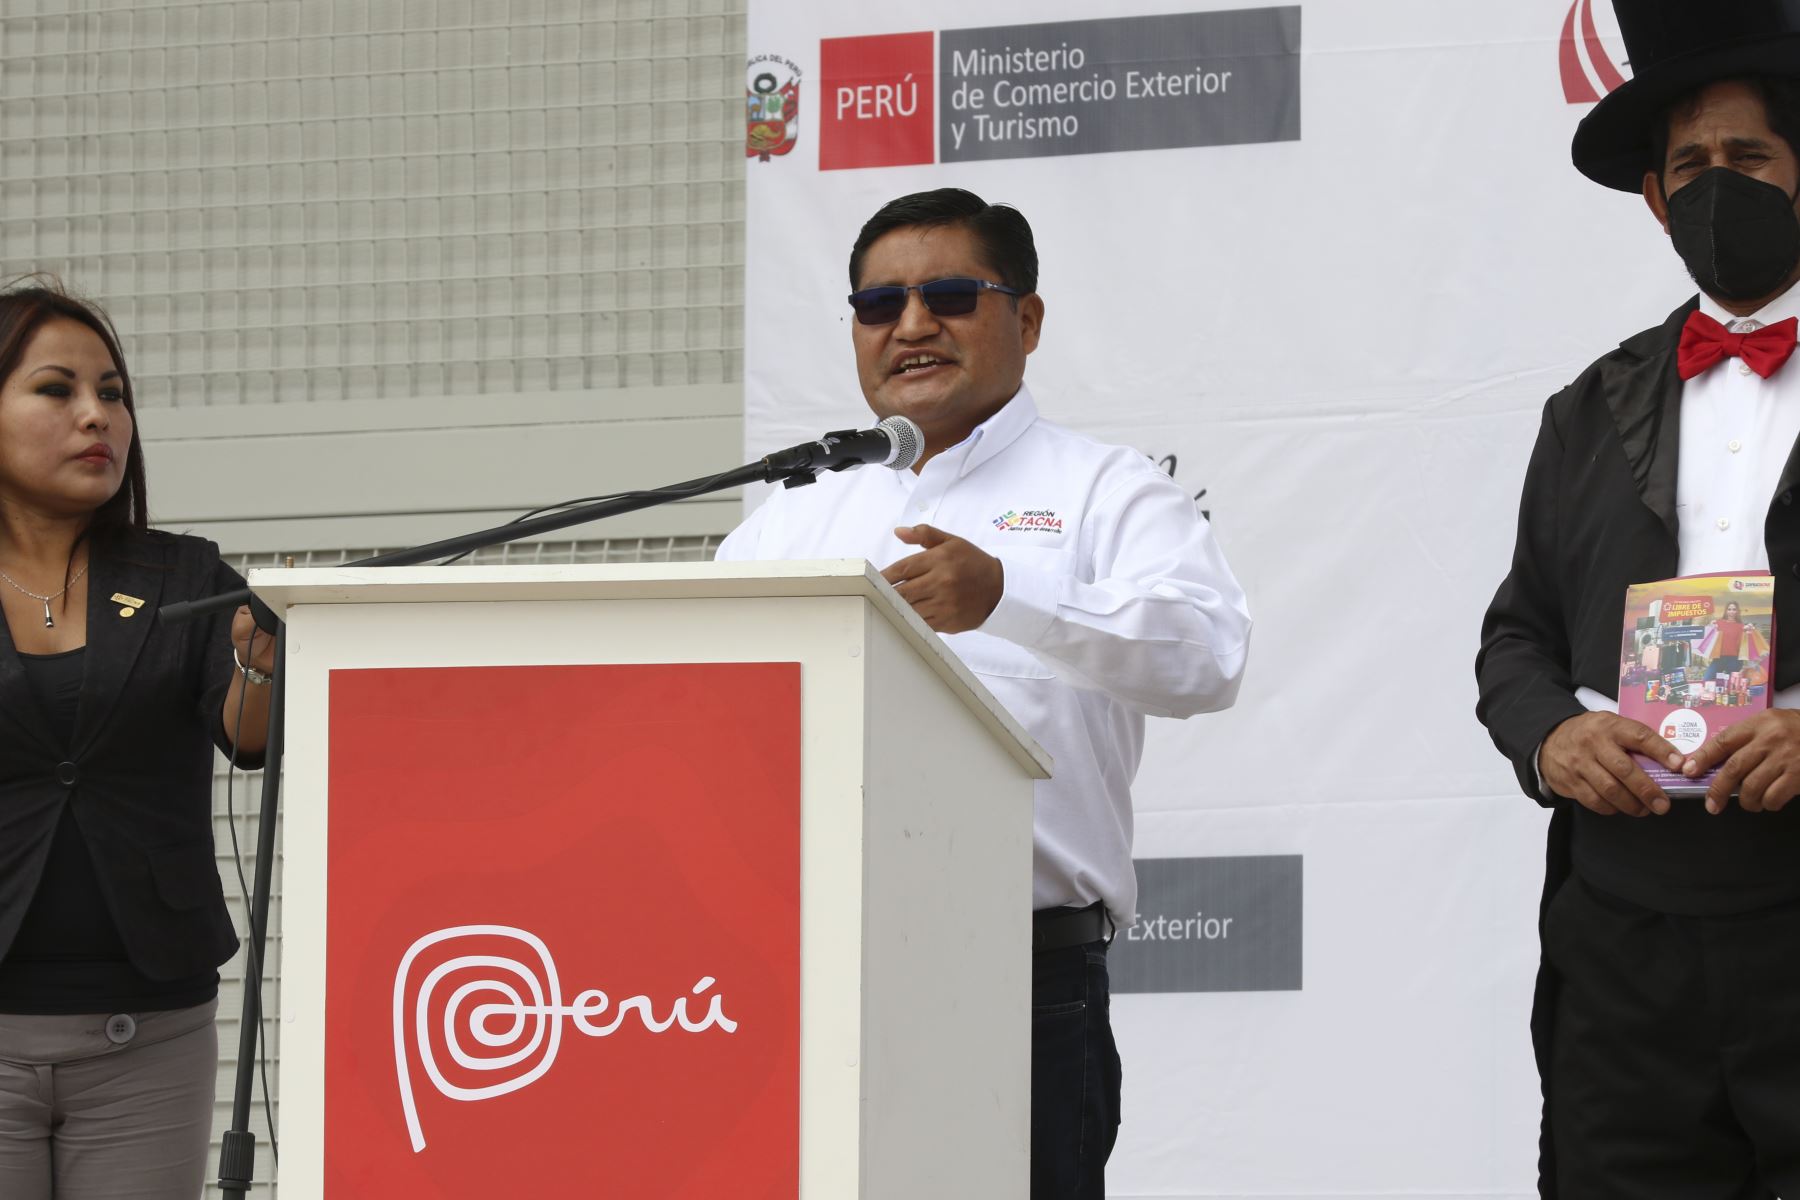 El gobernador de Tacna, Juan Tonconi, destacó la reapertura de la frontera con Chile y confió en que la economía de su región se recuperará rápidamente. Foto: ANDINA/Eddy Ramos.